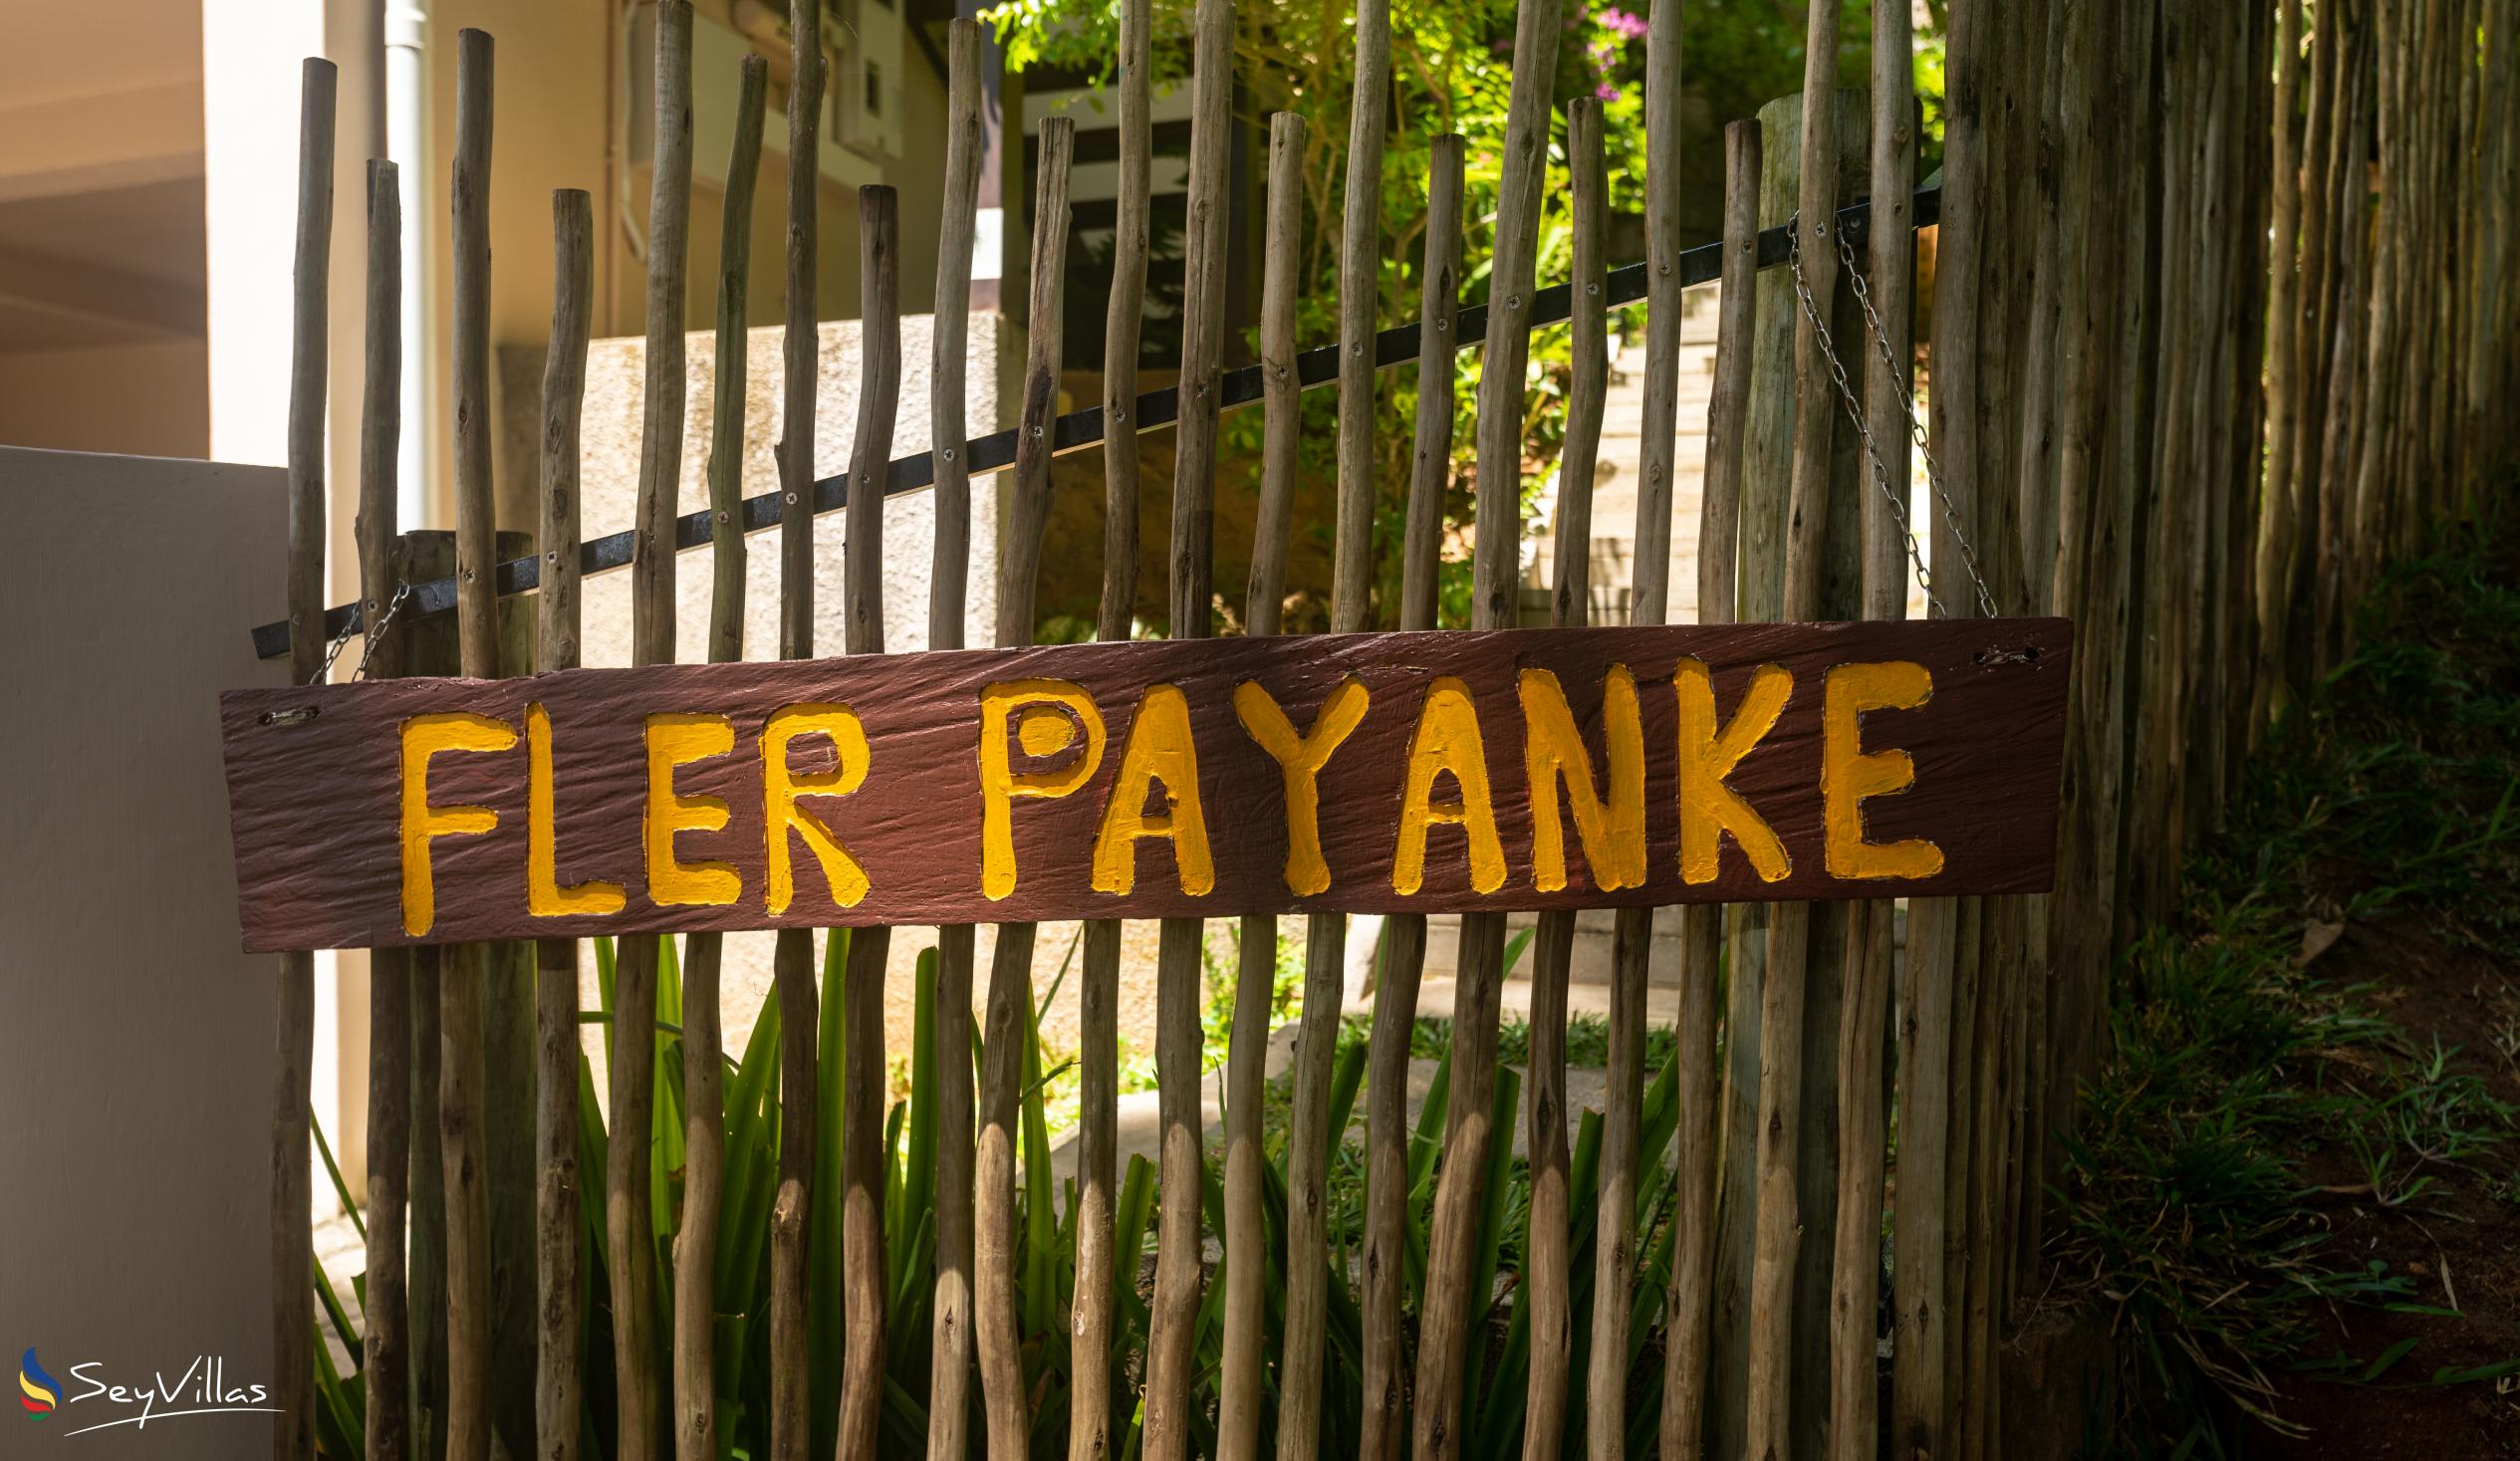 Foto 15: Fler Payanke - Extérieur - Mahé (Seychelles)